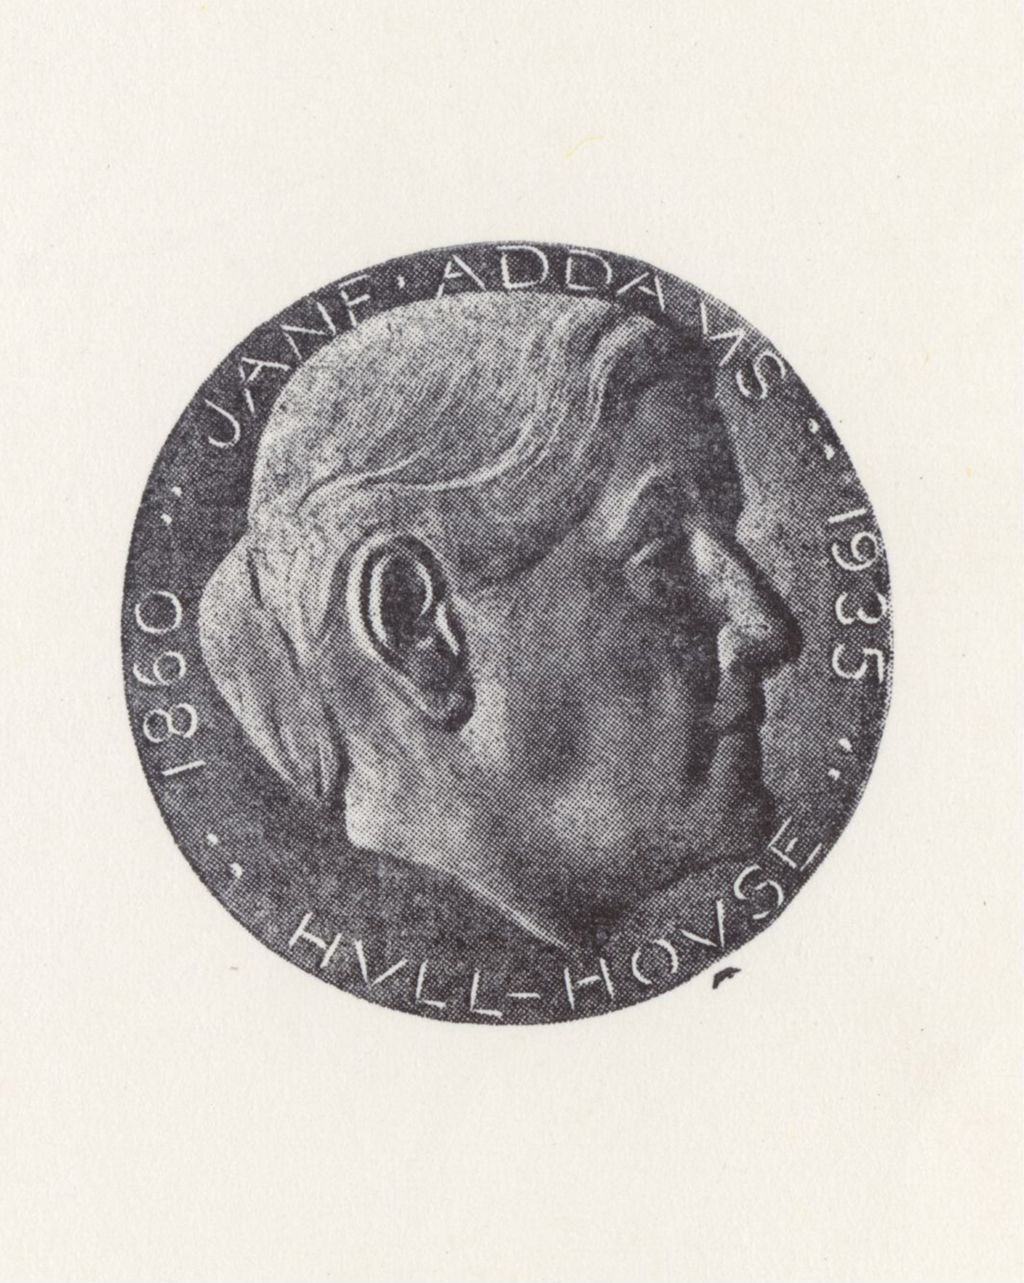 Miniature of Jane Addams medal